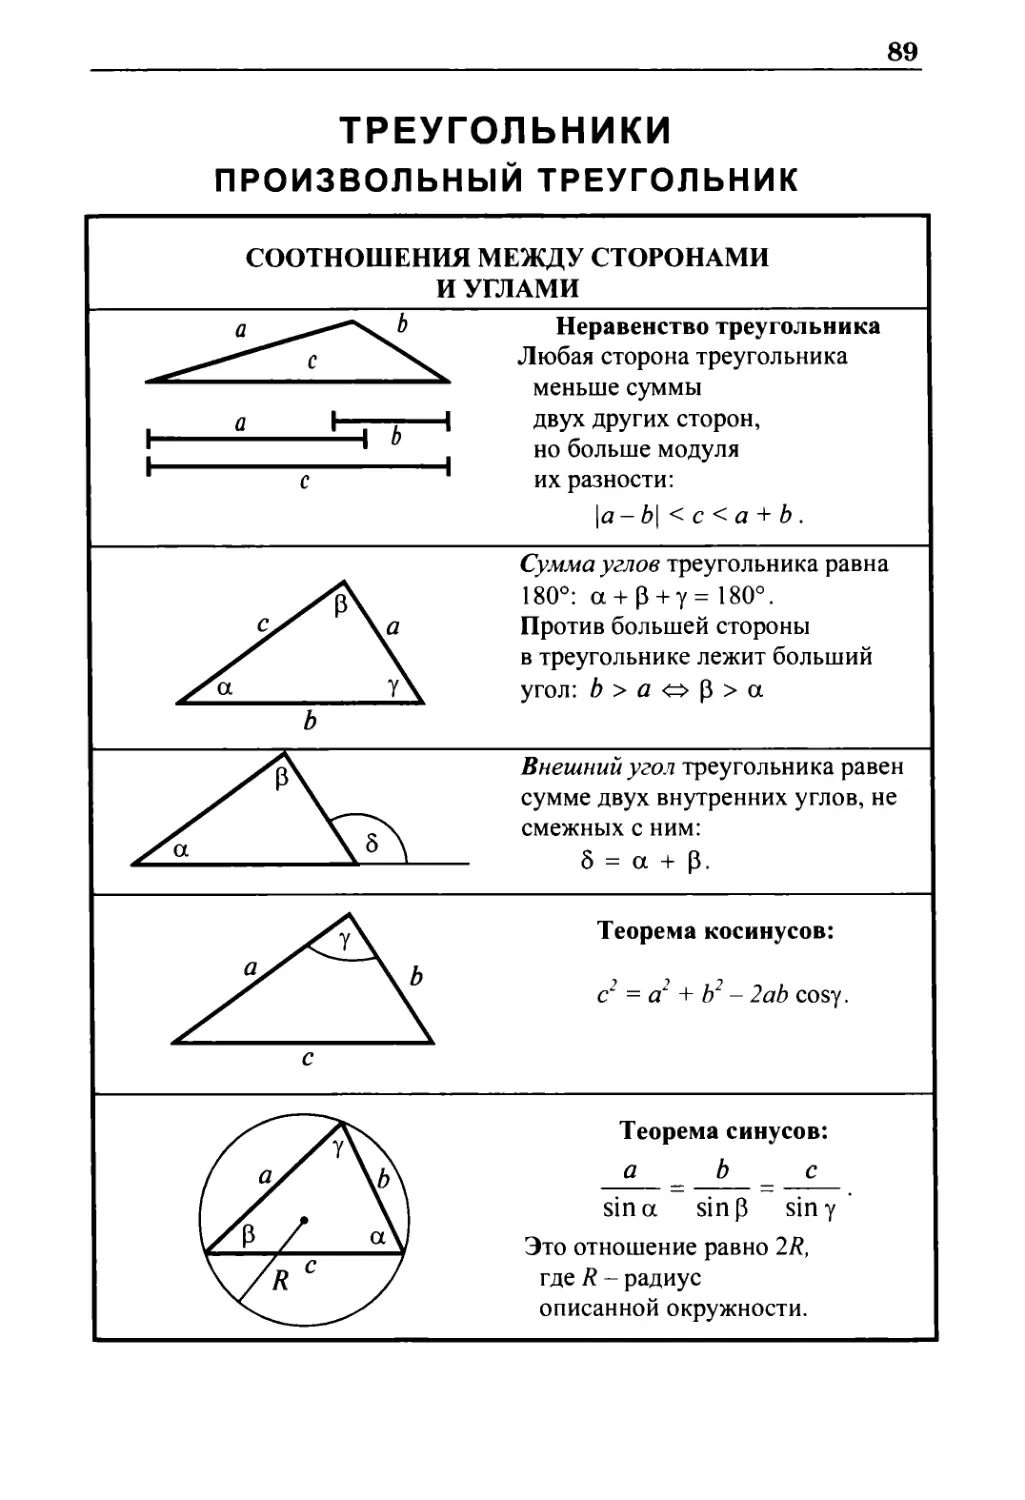 Треугольники
Соотношения между сторонами и углами